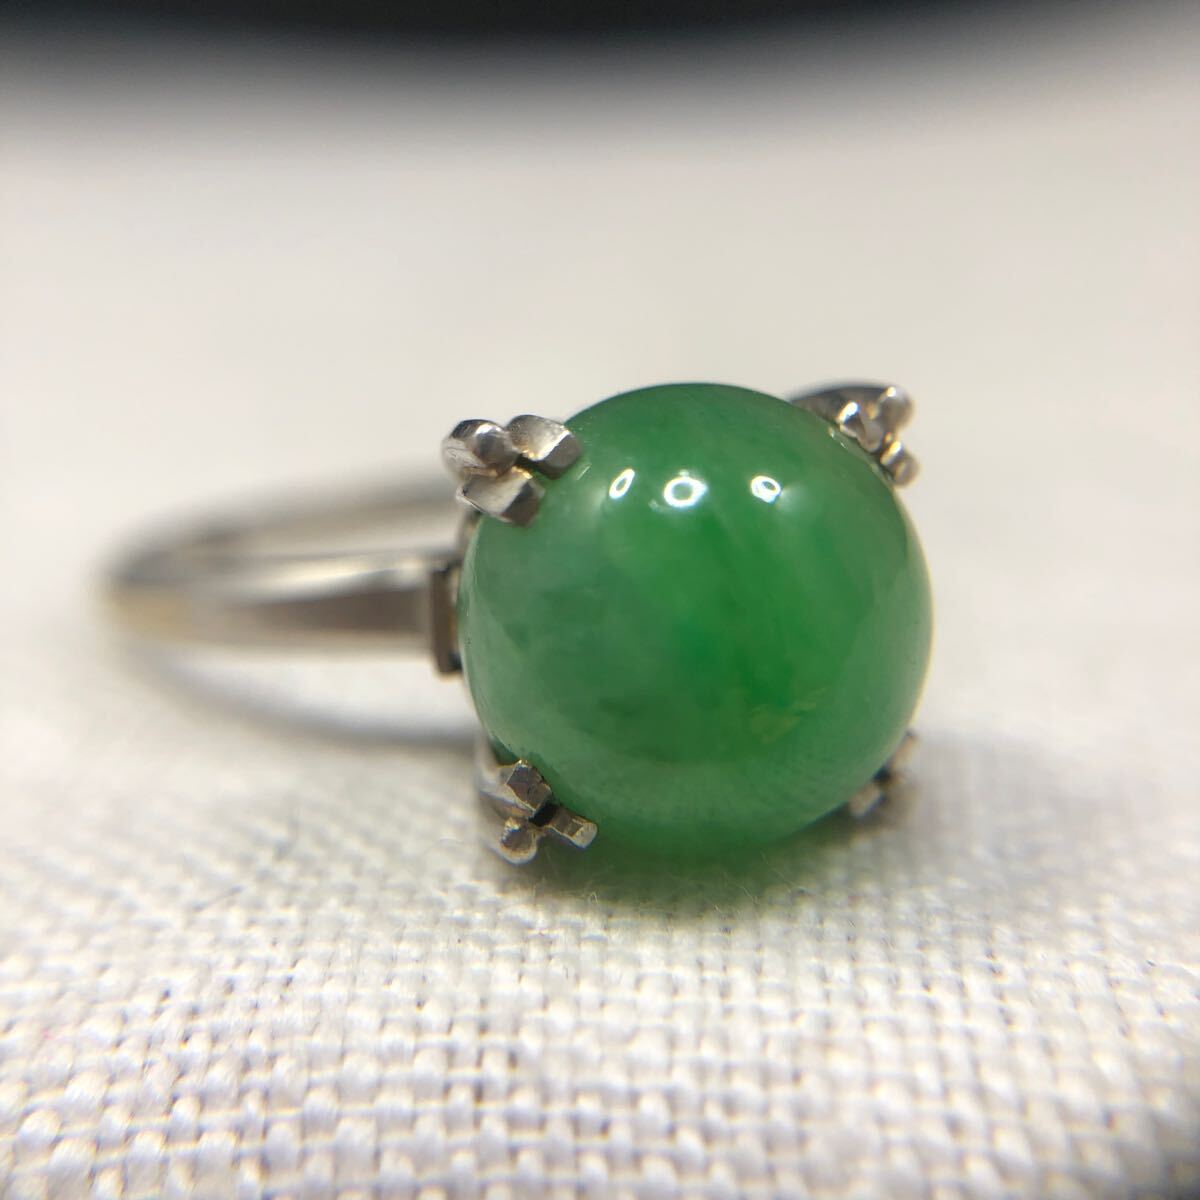  кольцо кольцо натуральный камень зеленый камень зеленый платина Pm подлинная вещь платина печать есть аксессуары драгоценный металл полная масса 6.5g 19 номер te The Yinling g